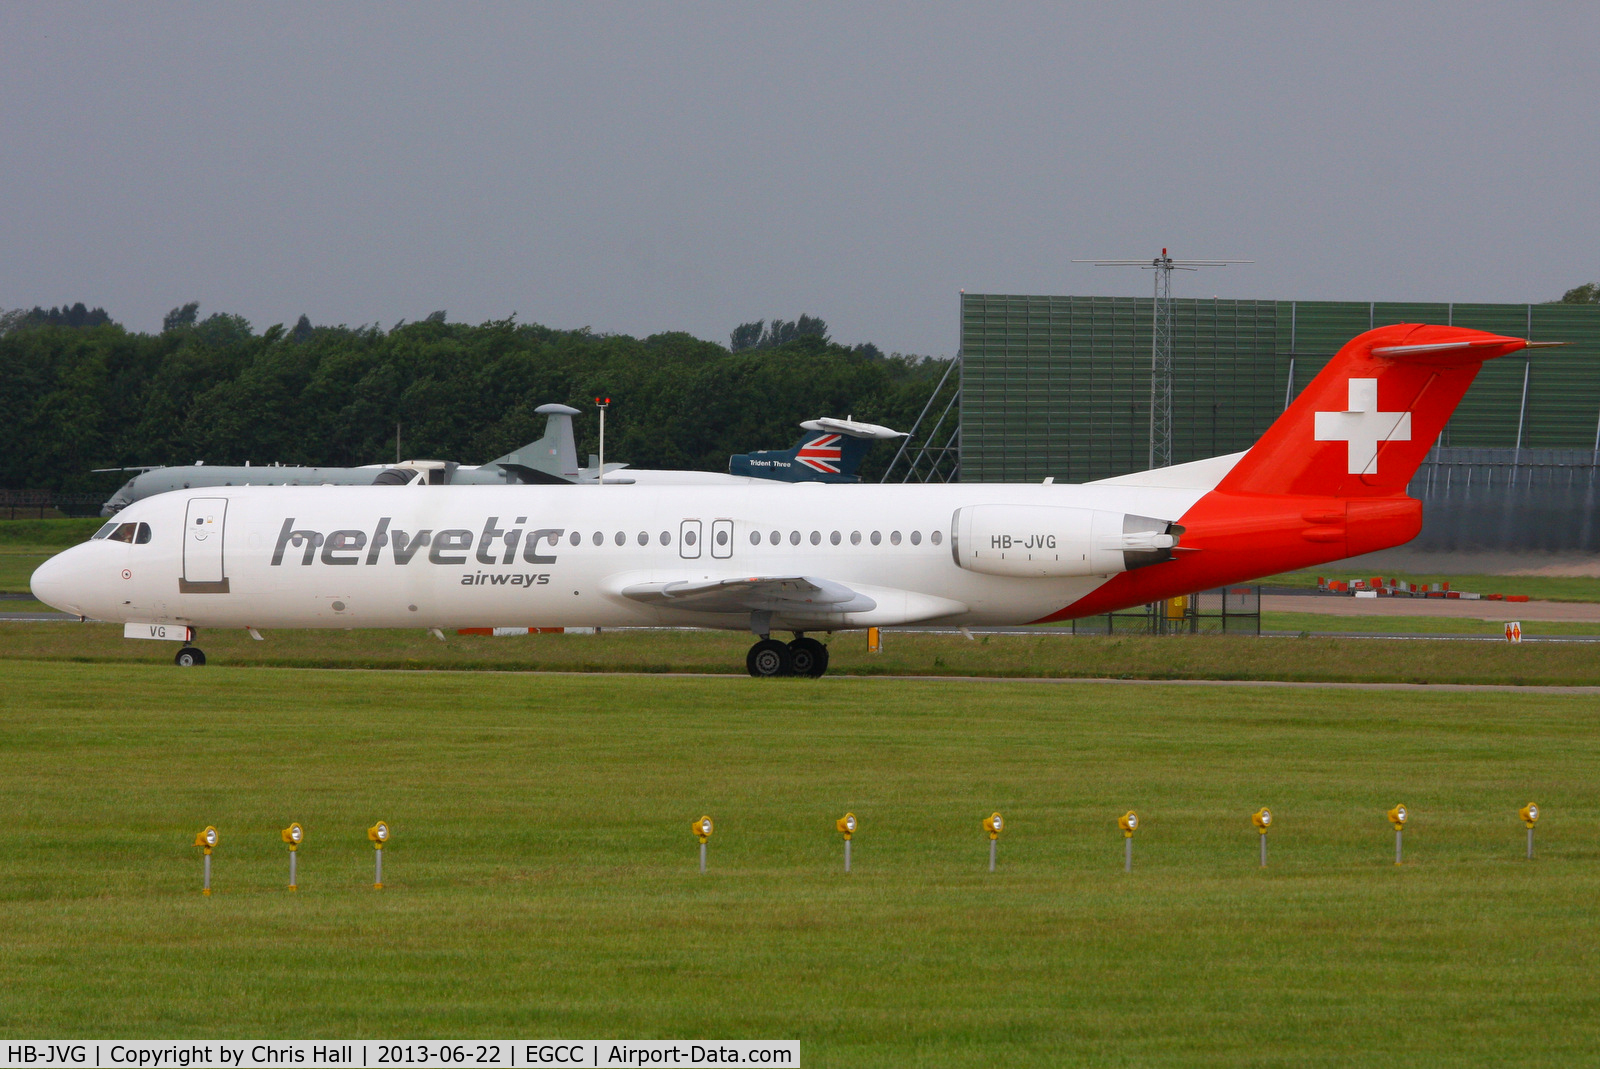 HB-JVG, 1993 Fokker 100 (F-28-0100) C/N 11478, Helvetic Airways